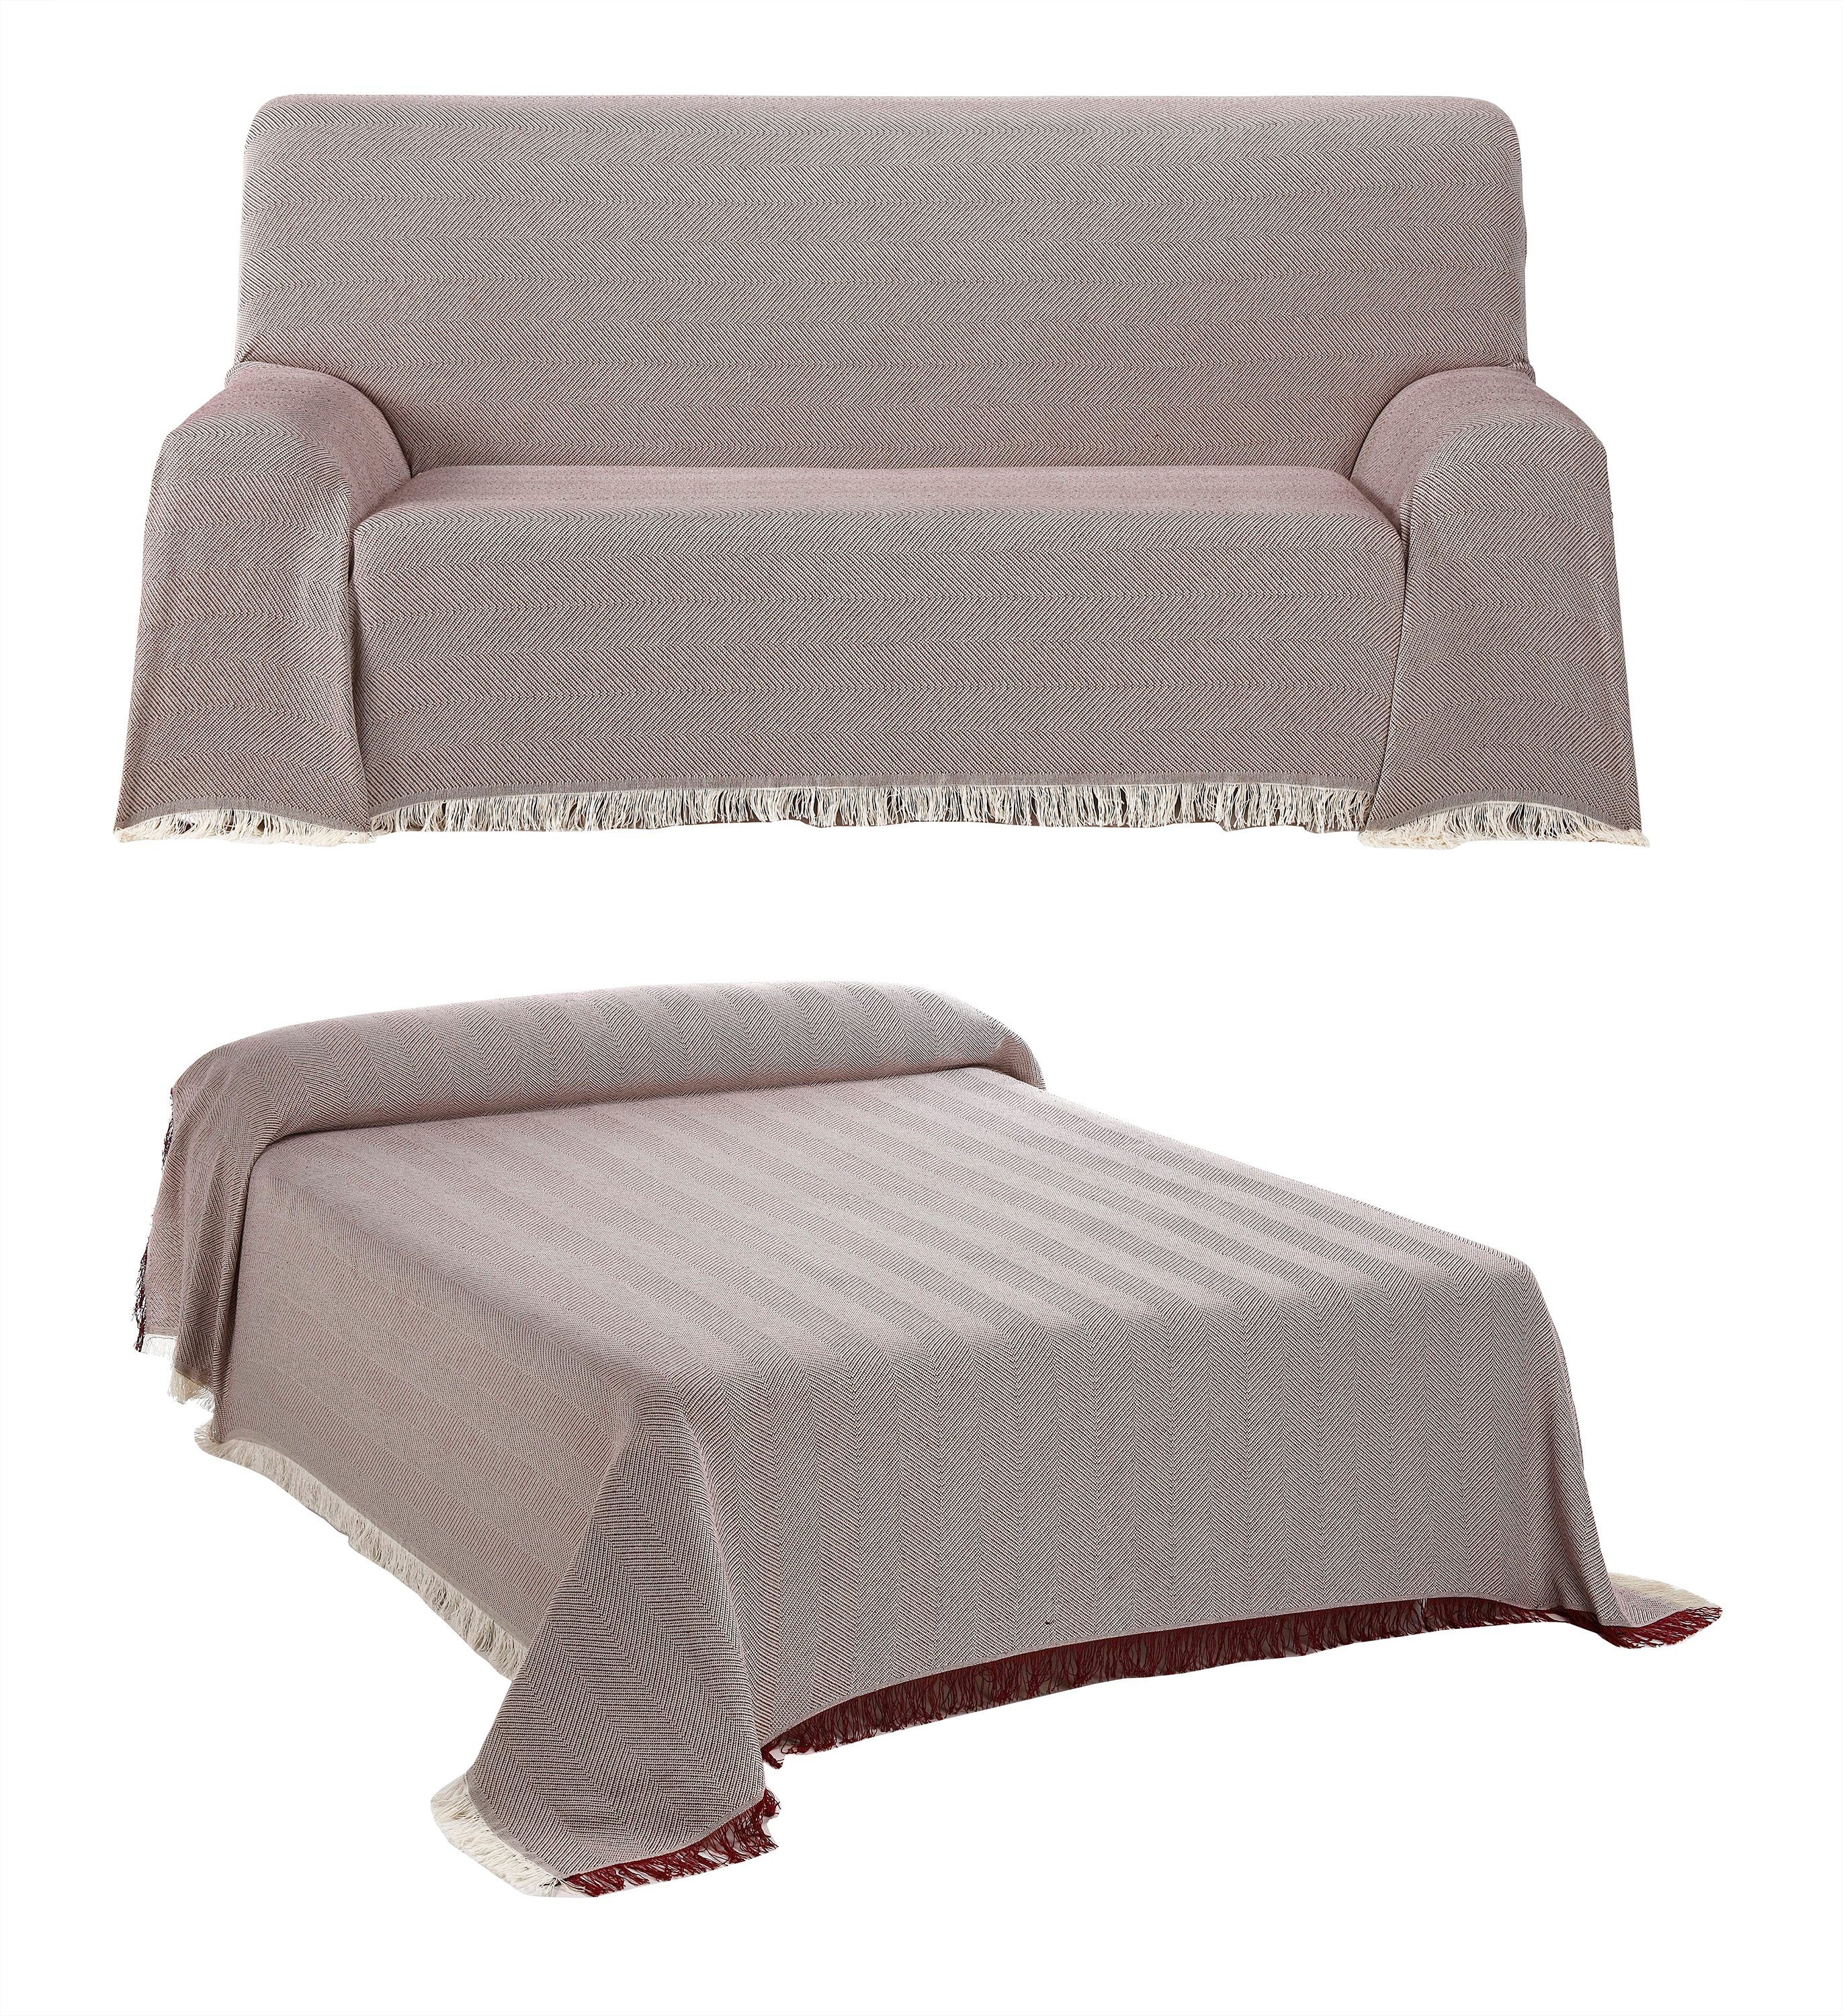 Überwurf Luisa Bettüberwurf Sofa Couch Tagesdecke Decke sand/weiß 220 x 240 cm # 